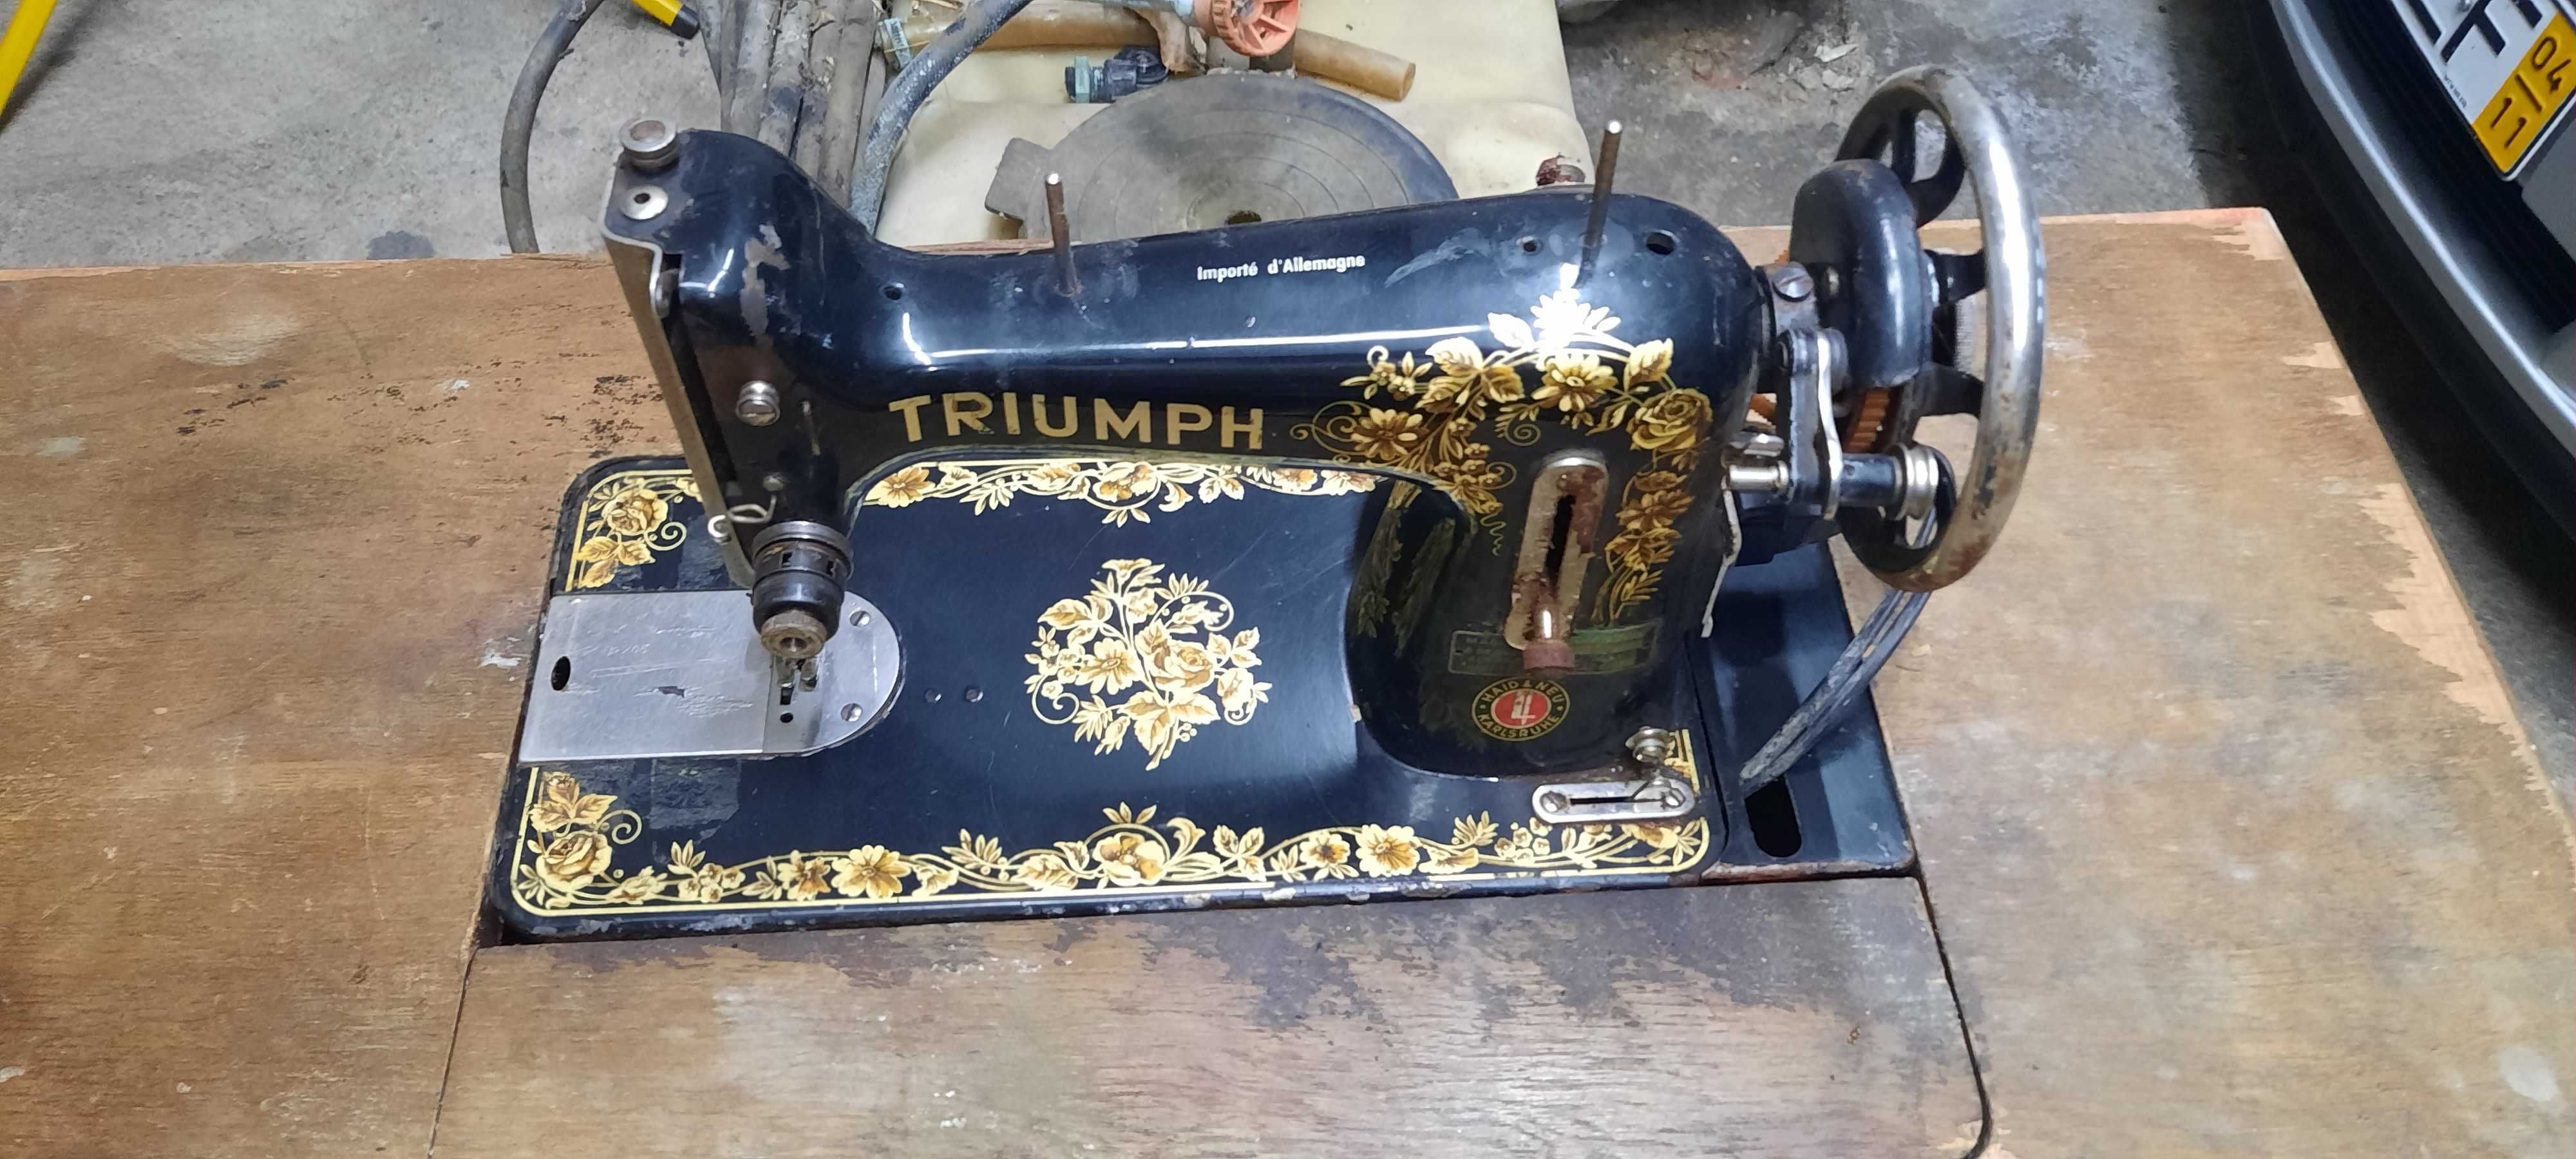 Maquina de costura triumph